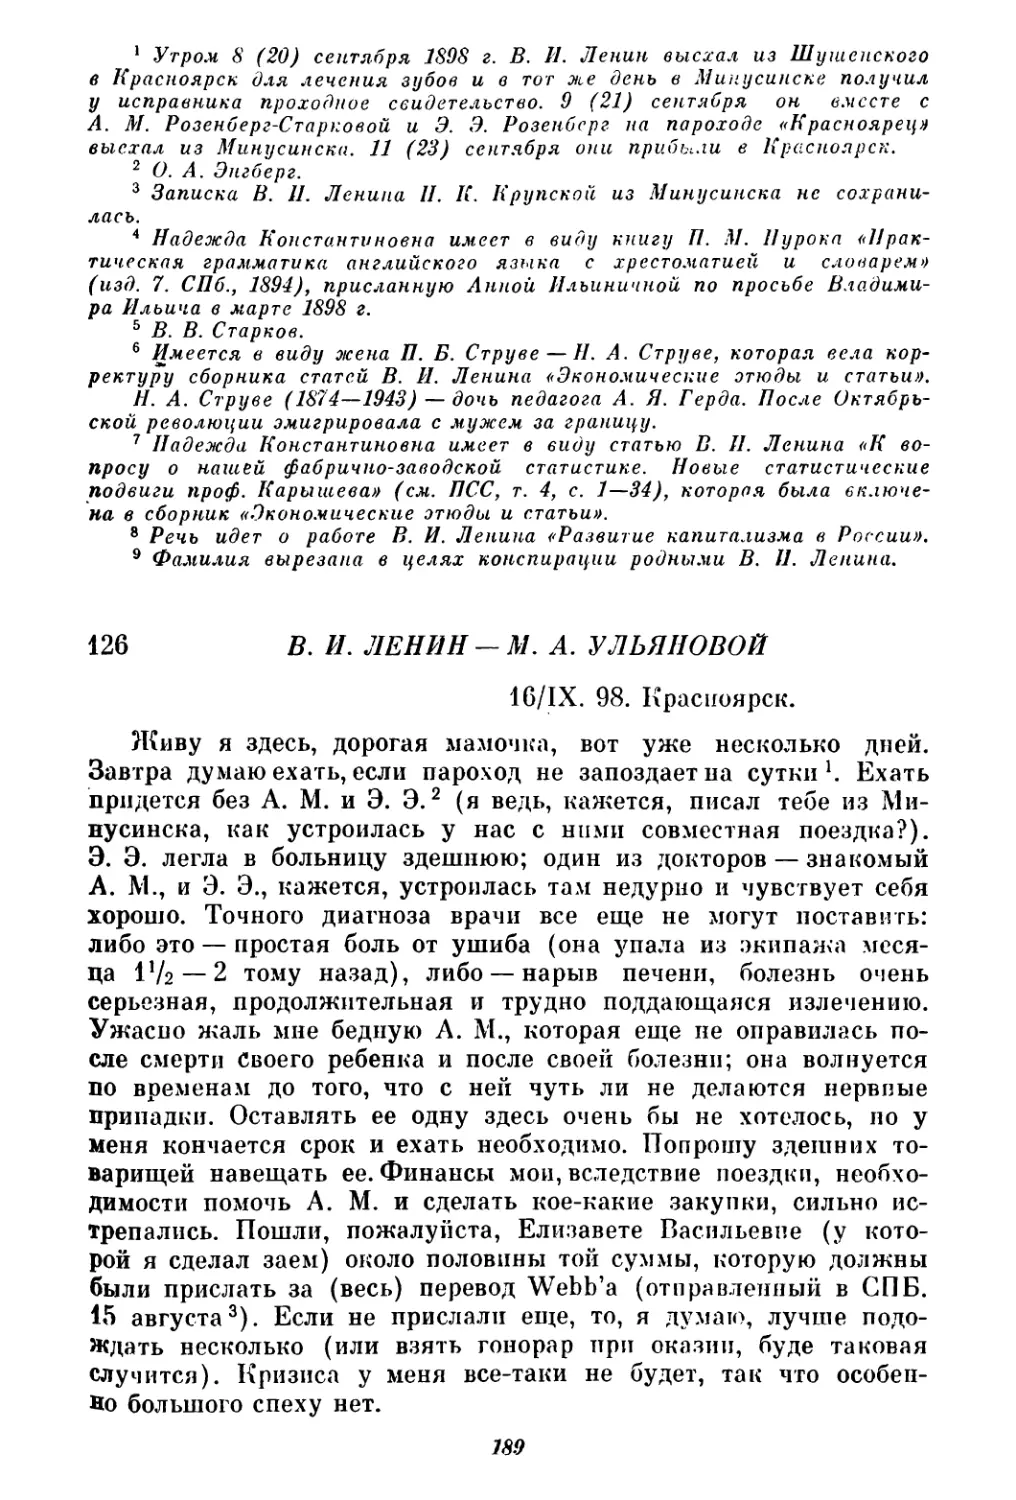 126. В. И. Ленин — М. А. Ульяновой. 16 сентября